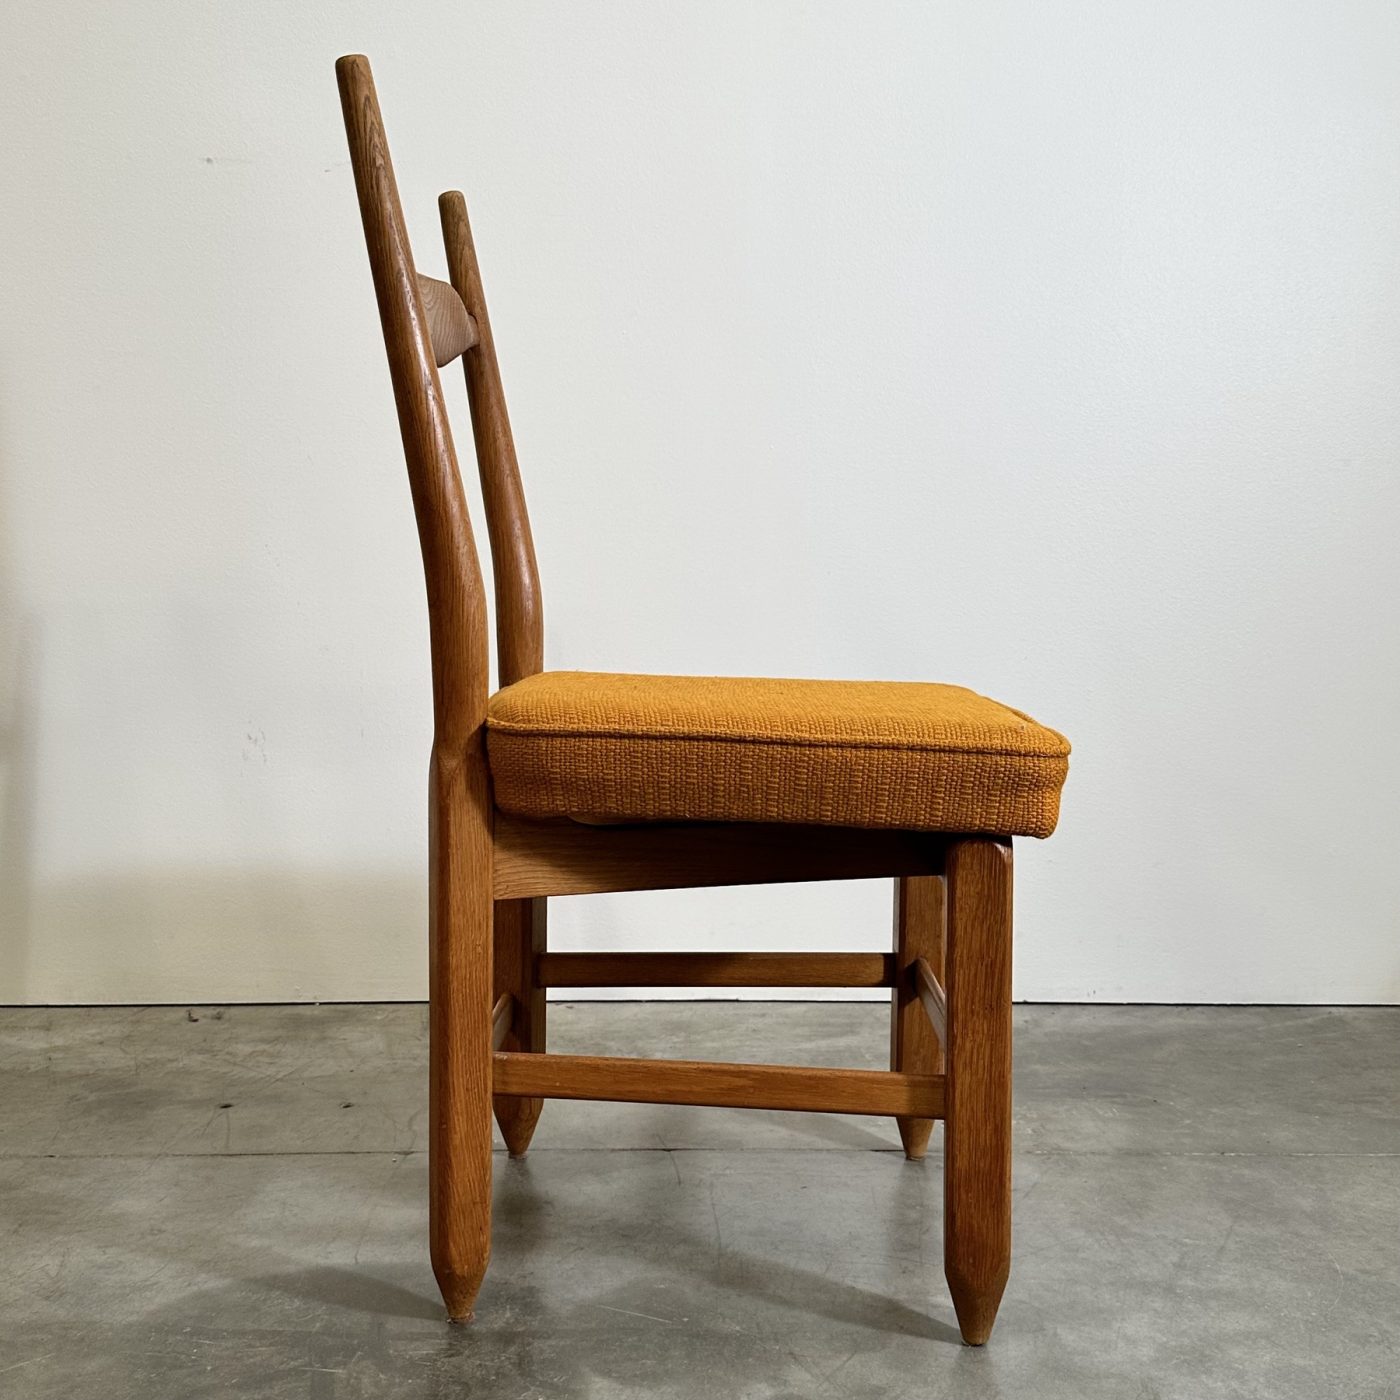 objet-vagabond-guillerme-chairs0002